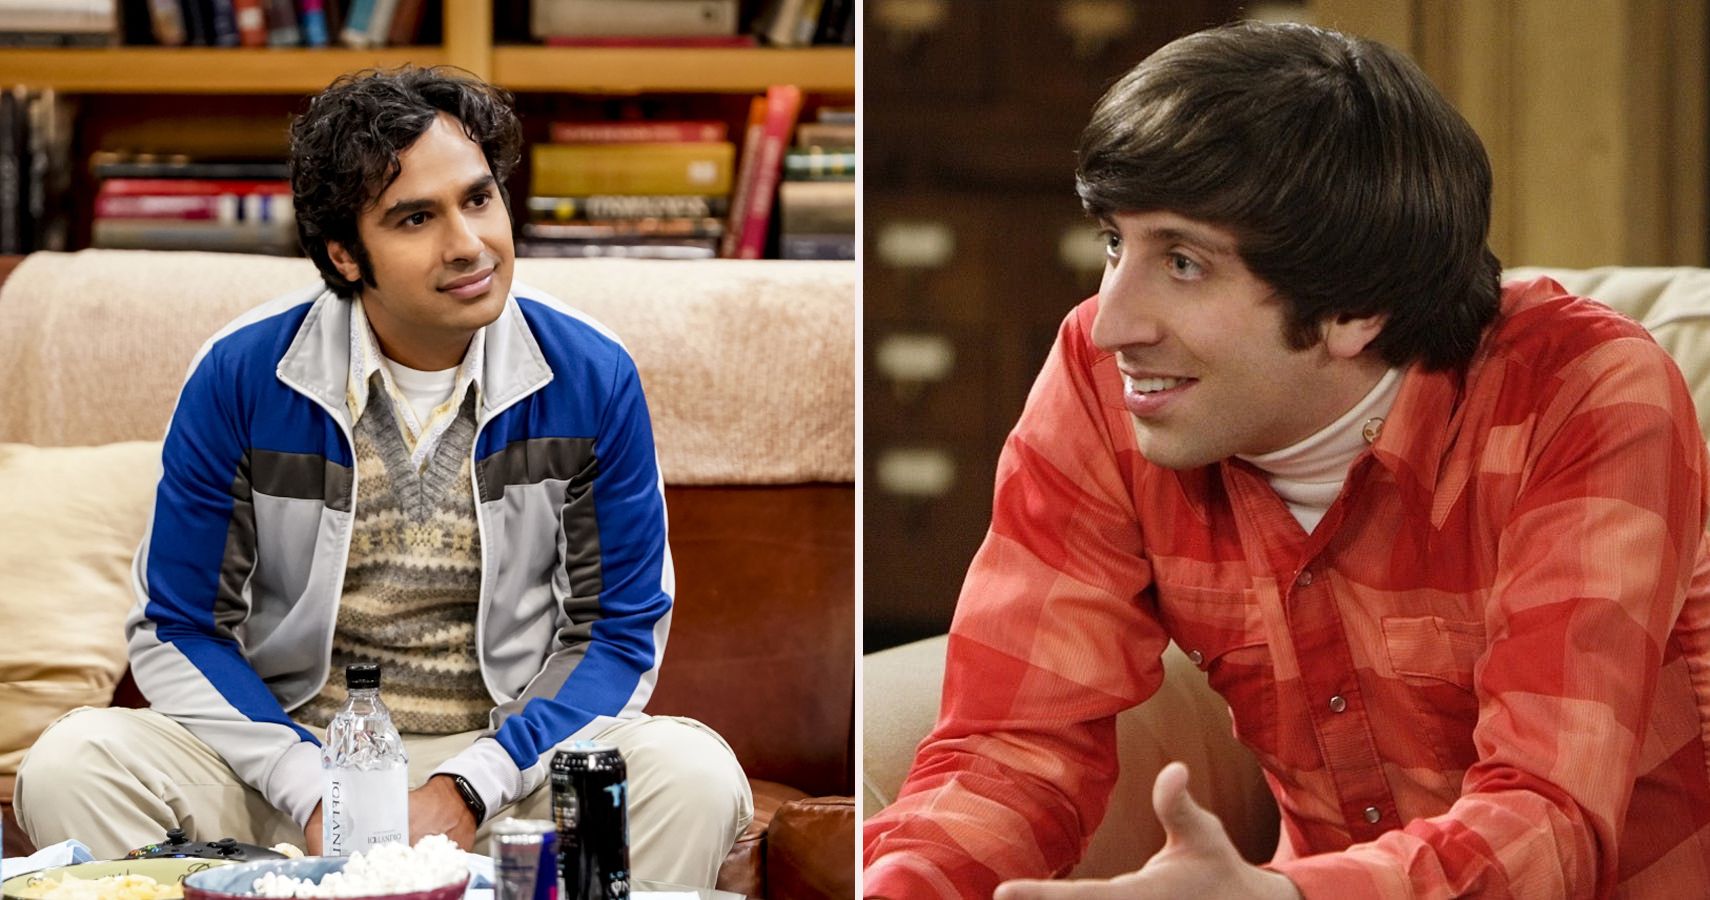 Raj and Howard from The Big Bang Theory